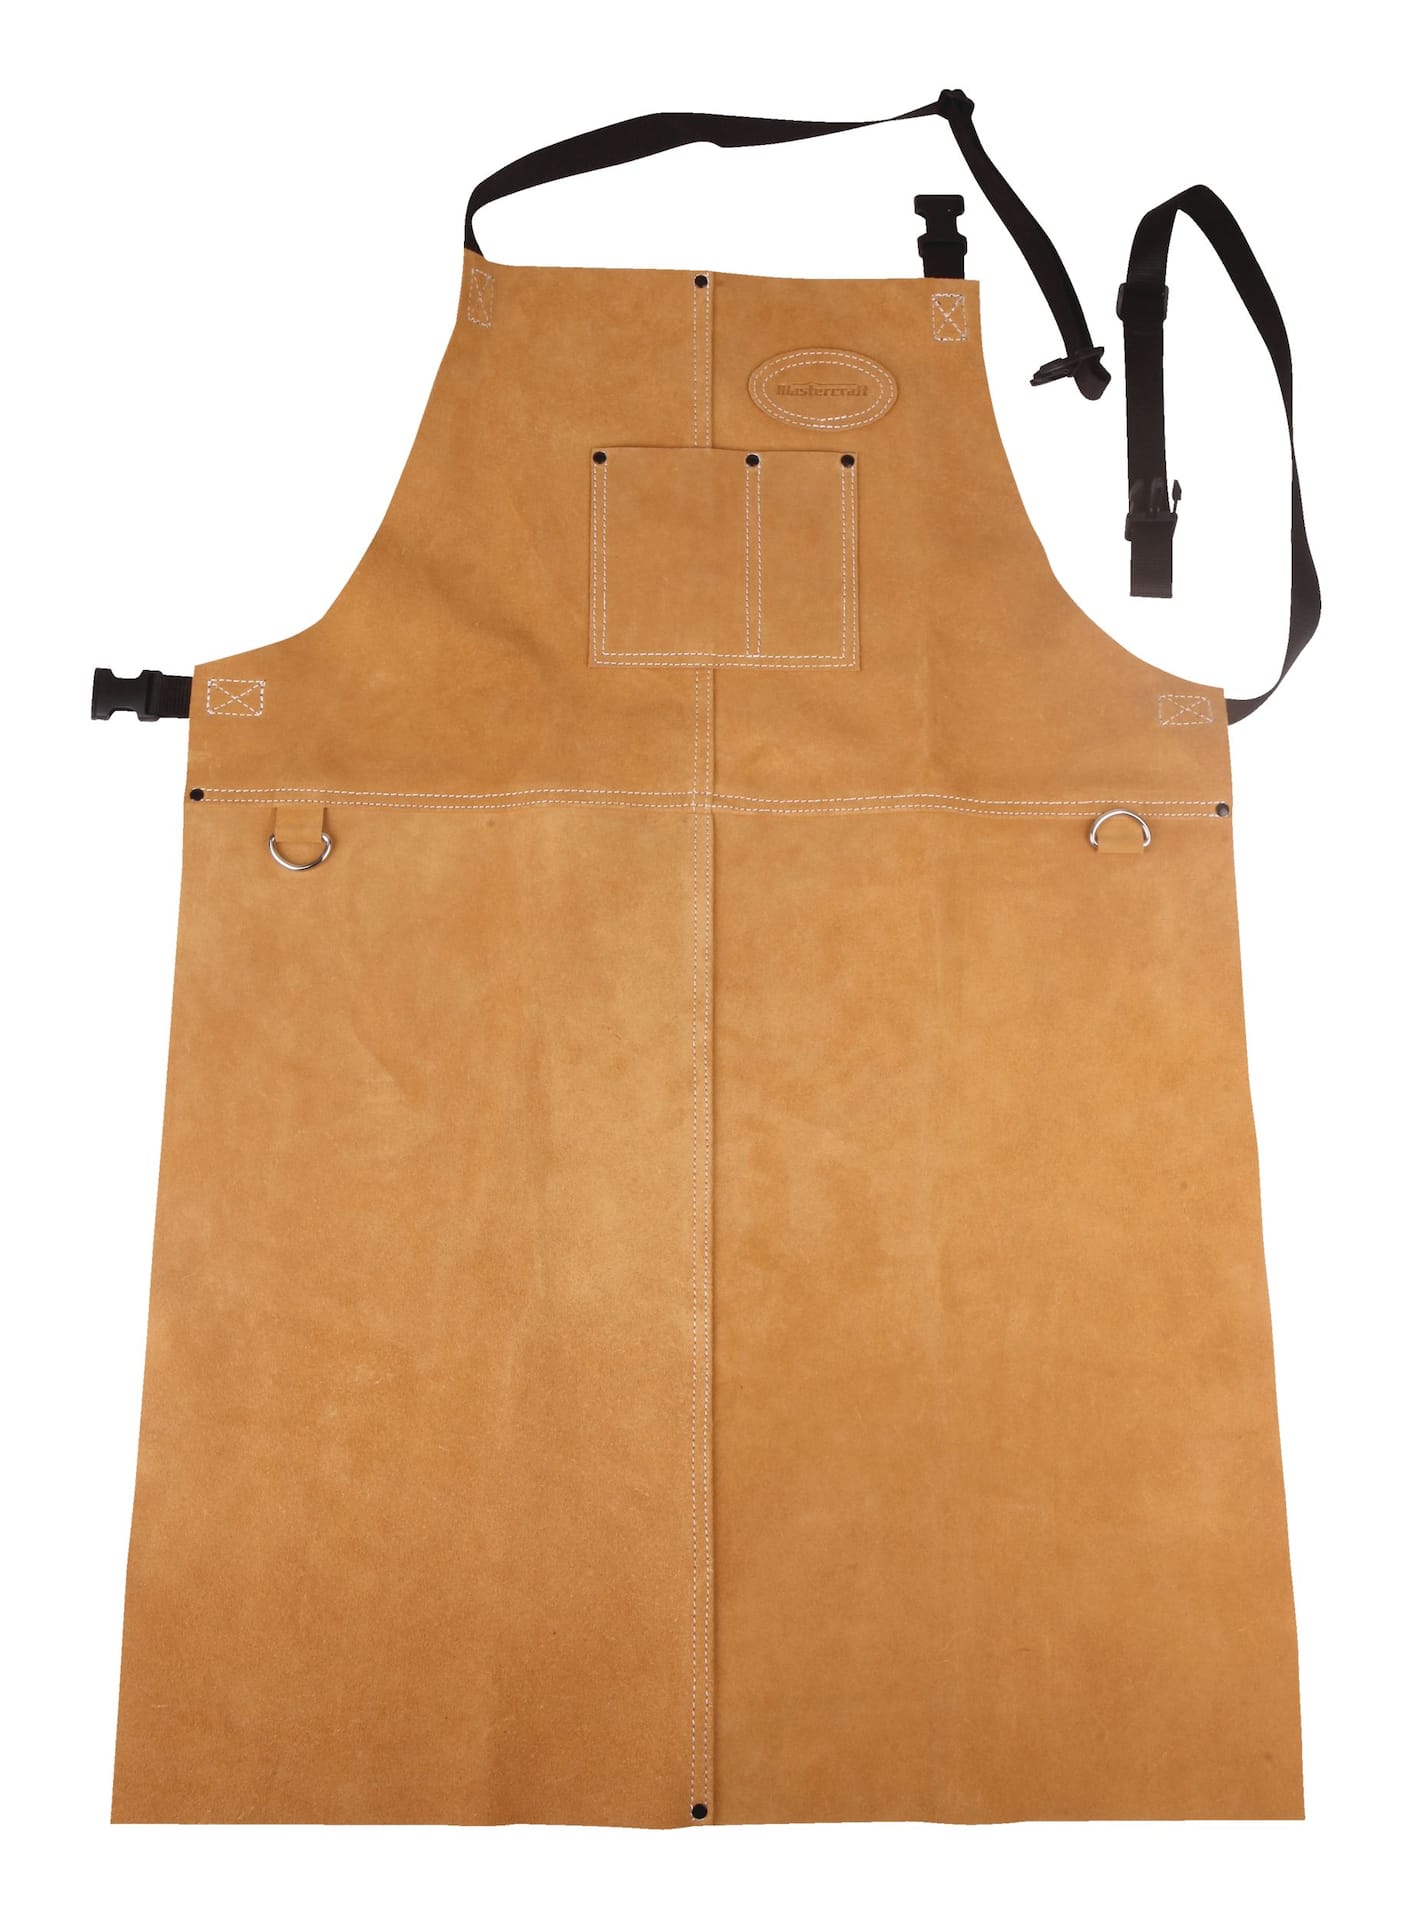 Tablier de Cuisine en Cuir pour homme - Crafted Leather - Cadeau